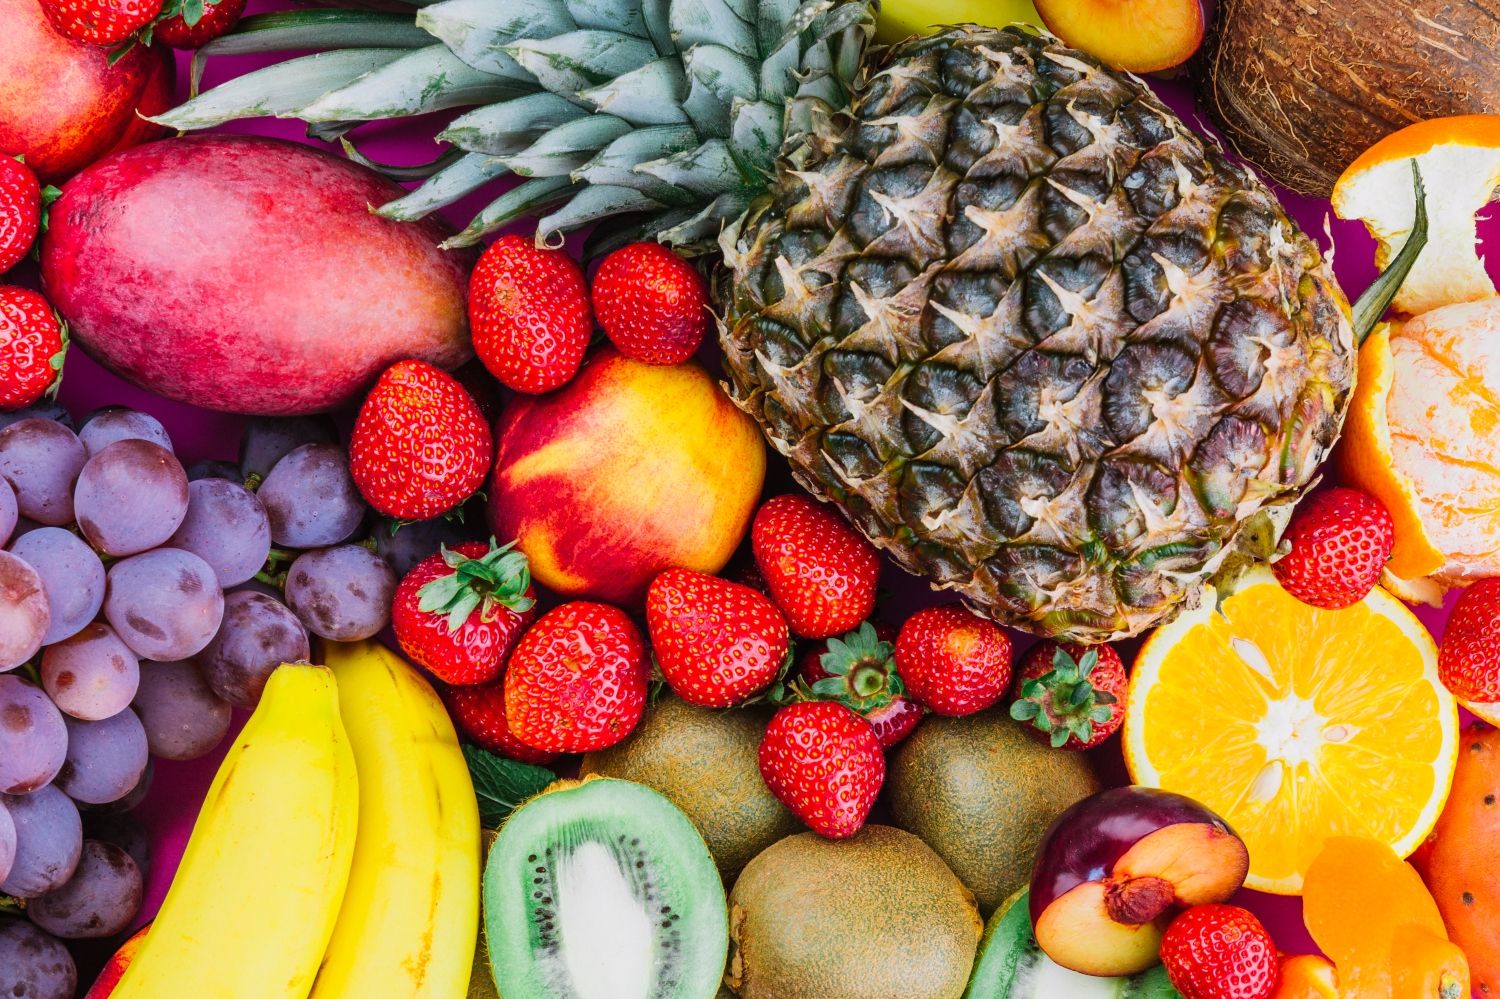  La fruta es un alimento saludable / PEXELS